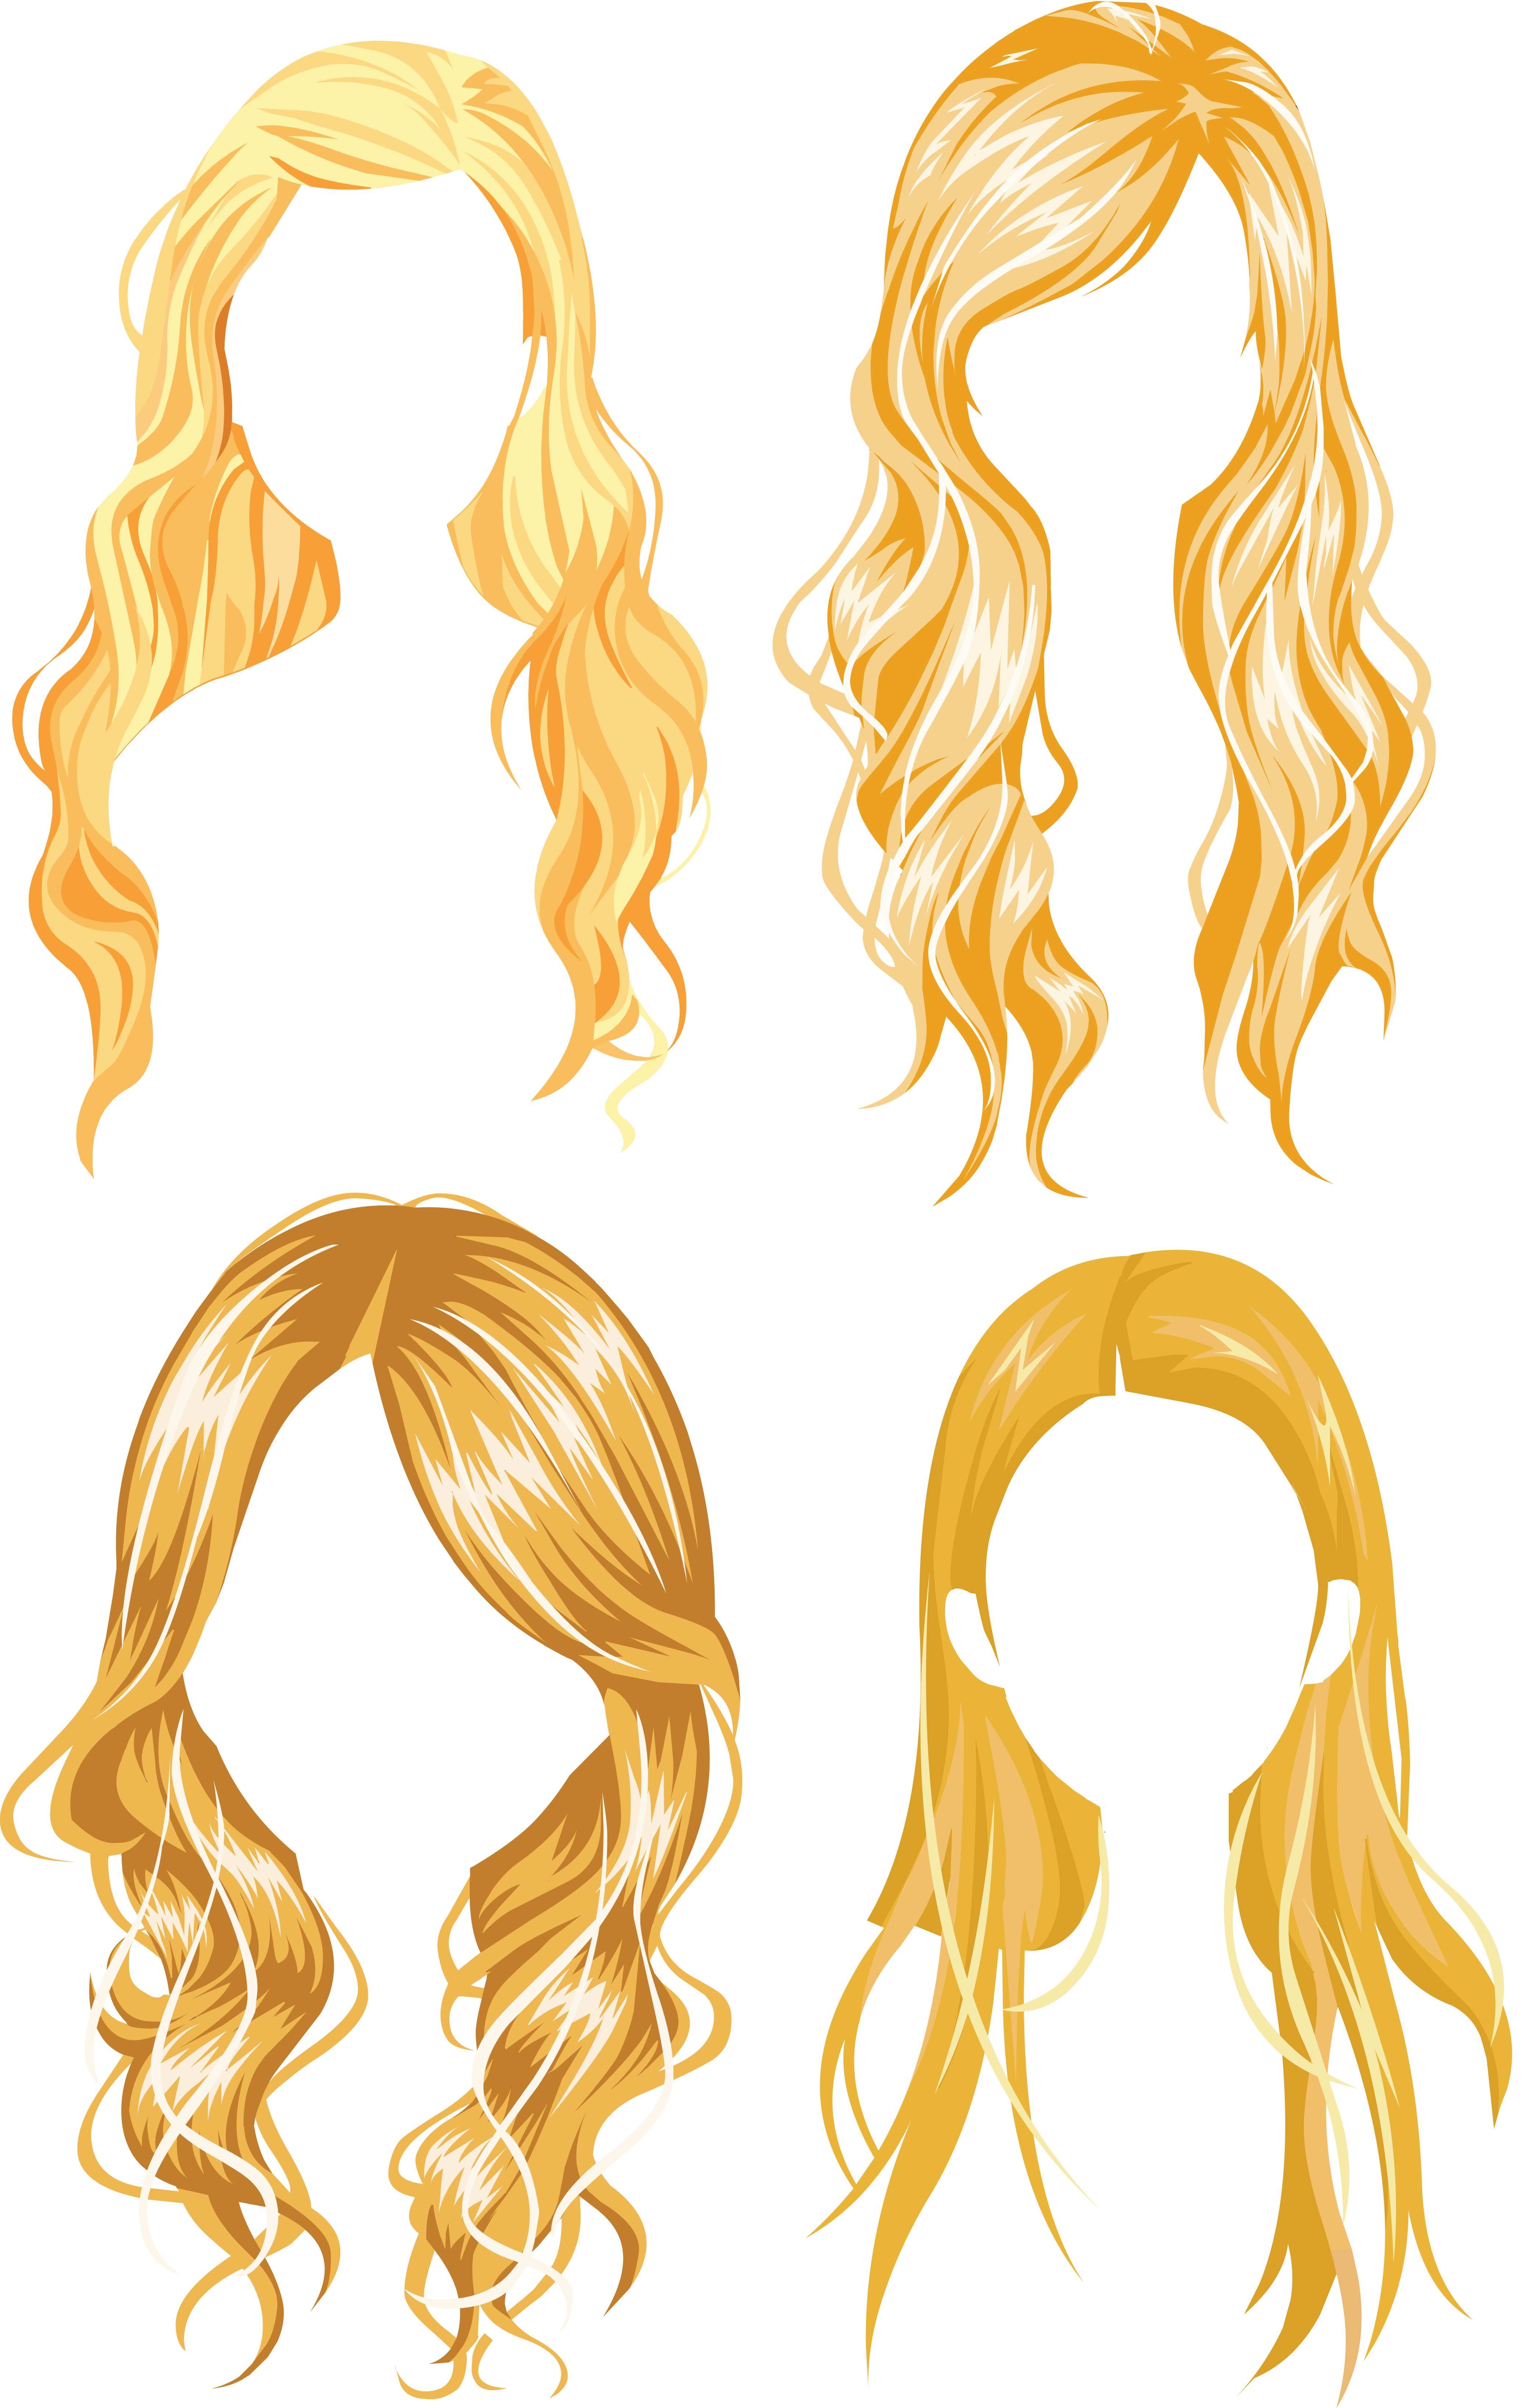 Haarperücke